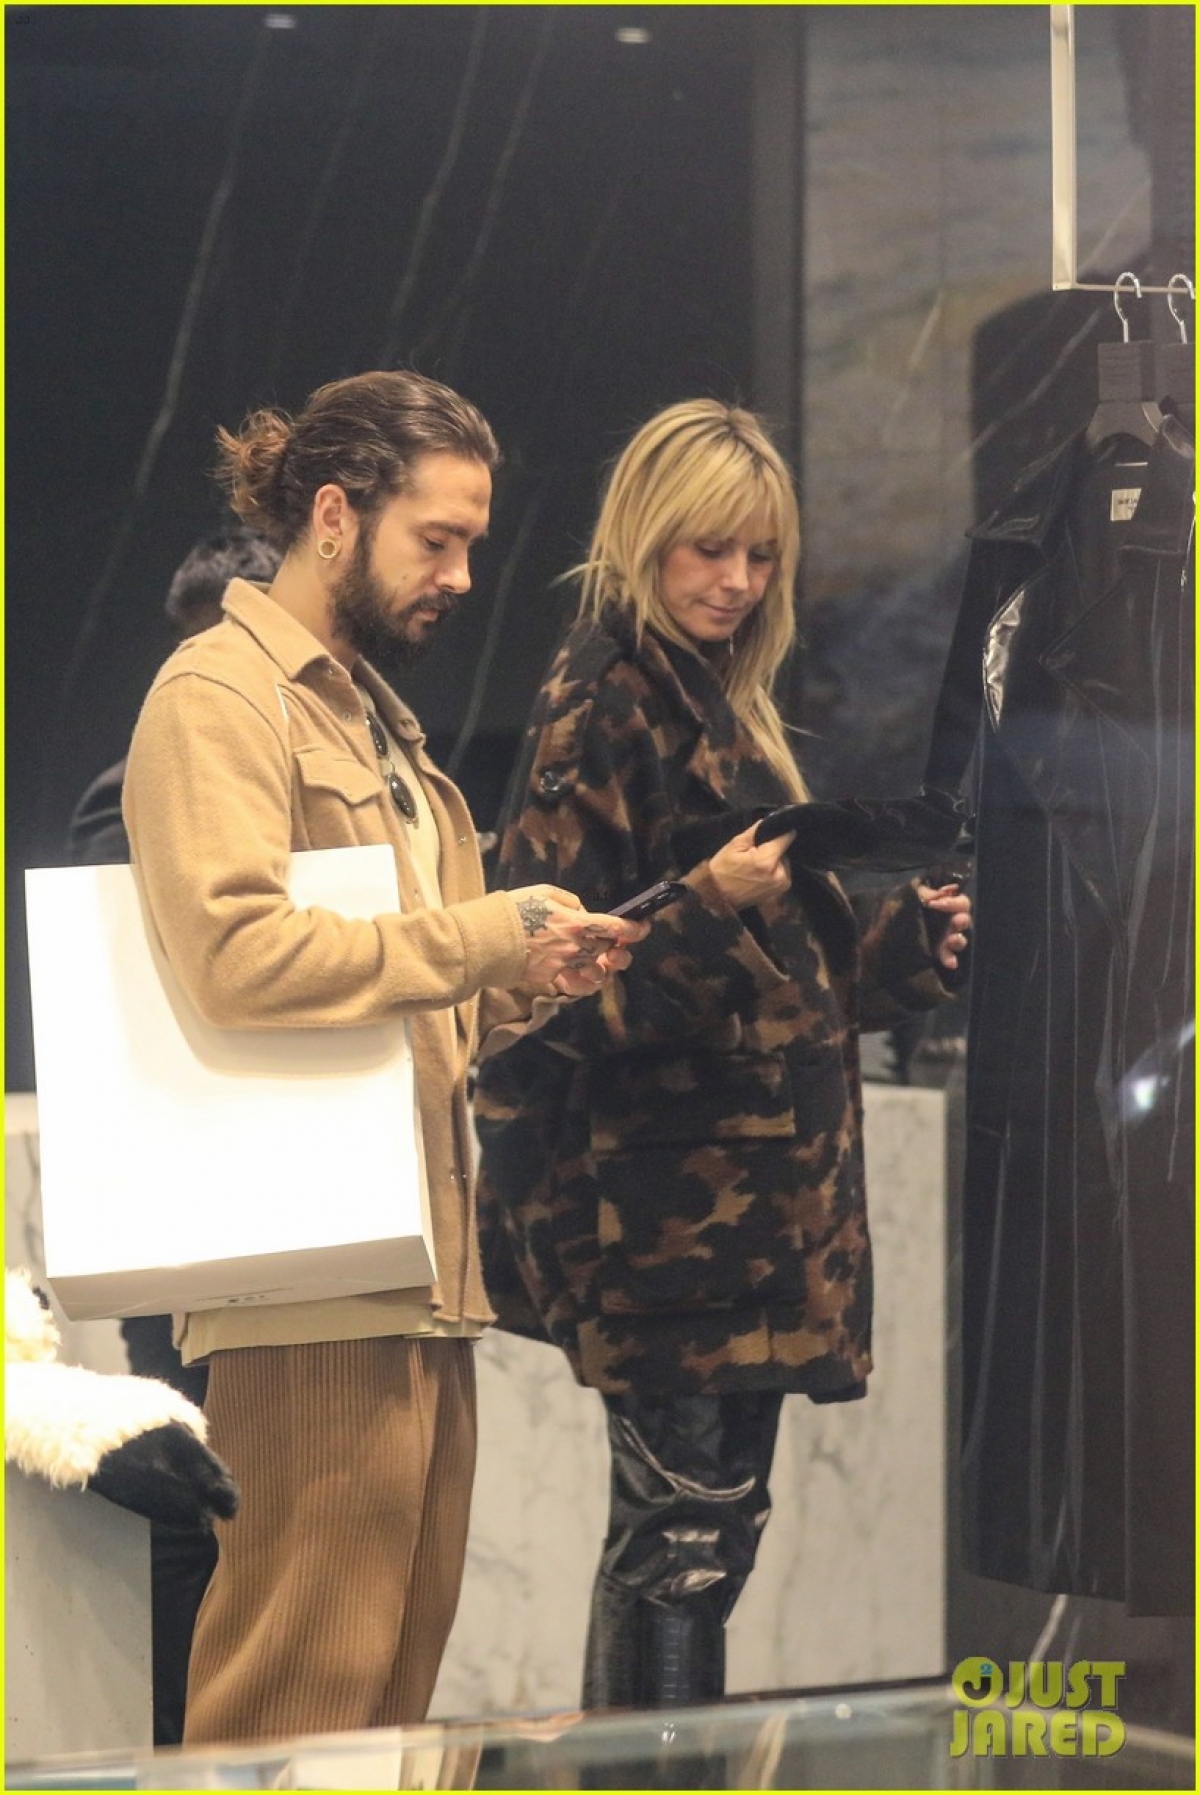 Siêu mẫu Heidi Klum diện đồ sành điệu, tình cảm nắm tay chồng trẻ đi mua sắm - Ảnh 3.